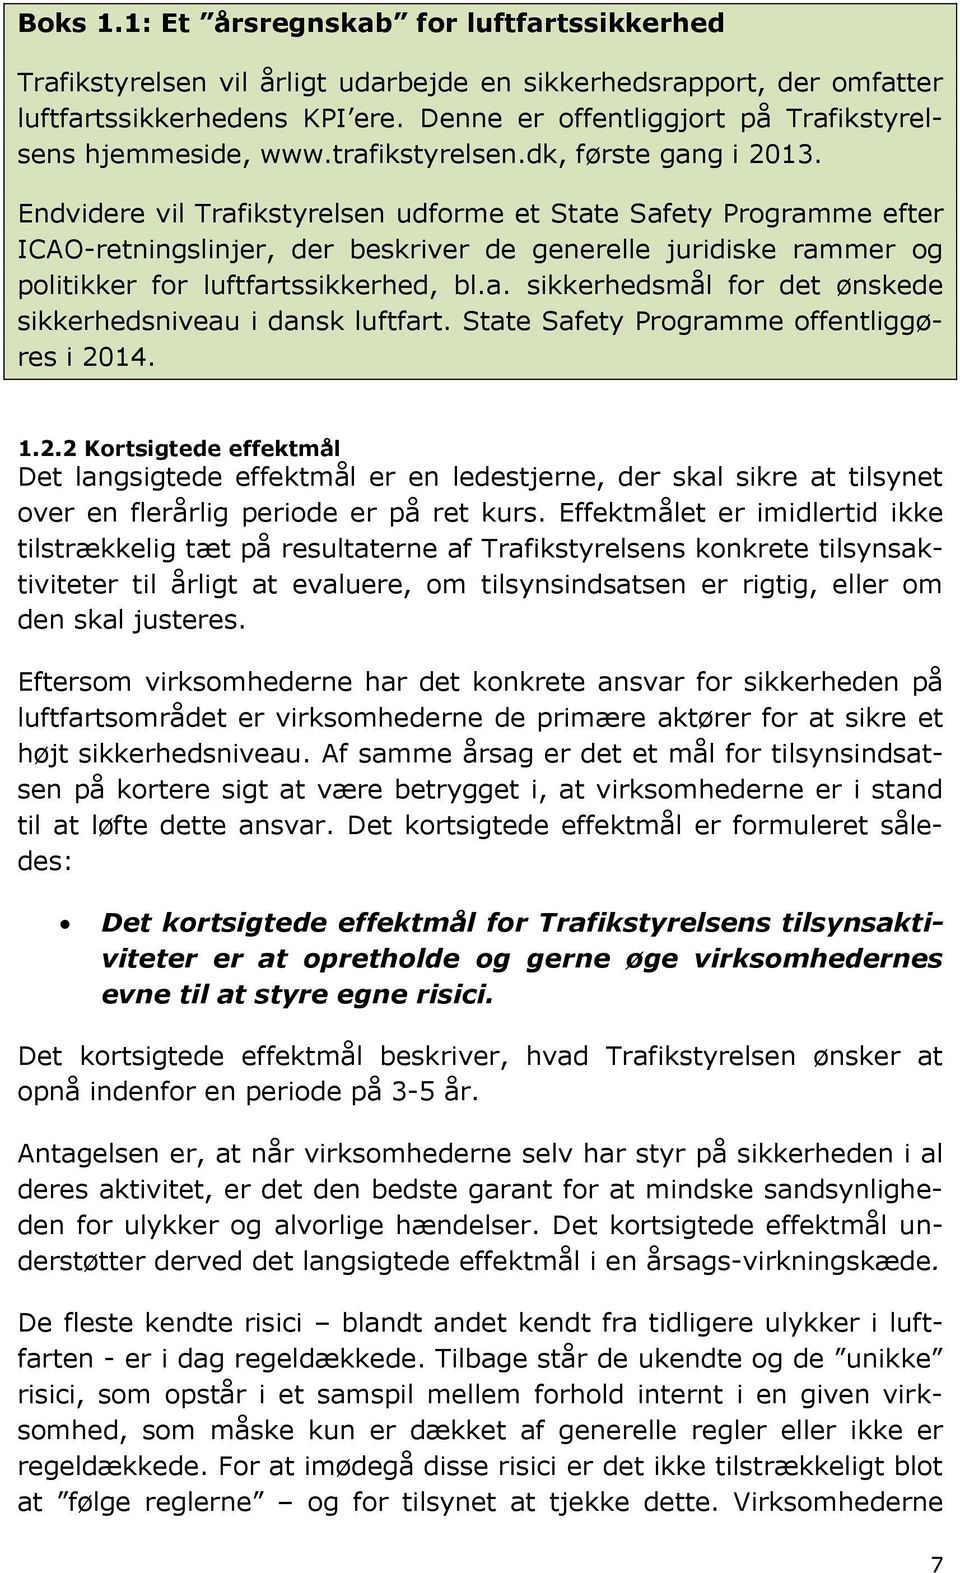 Endvidere vil Trafikstyrelsen udforme et State Safety Programme efter ICAO-retningslinjer, der beskriver de generelle juridiske rammer og politikker for luftfartssikkerhed, bl.a. sikkerhedsmål for det ønskede sikkerhedsniveau i dansk luftfart.